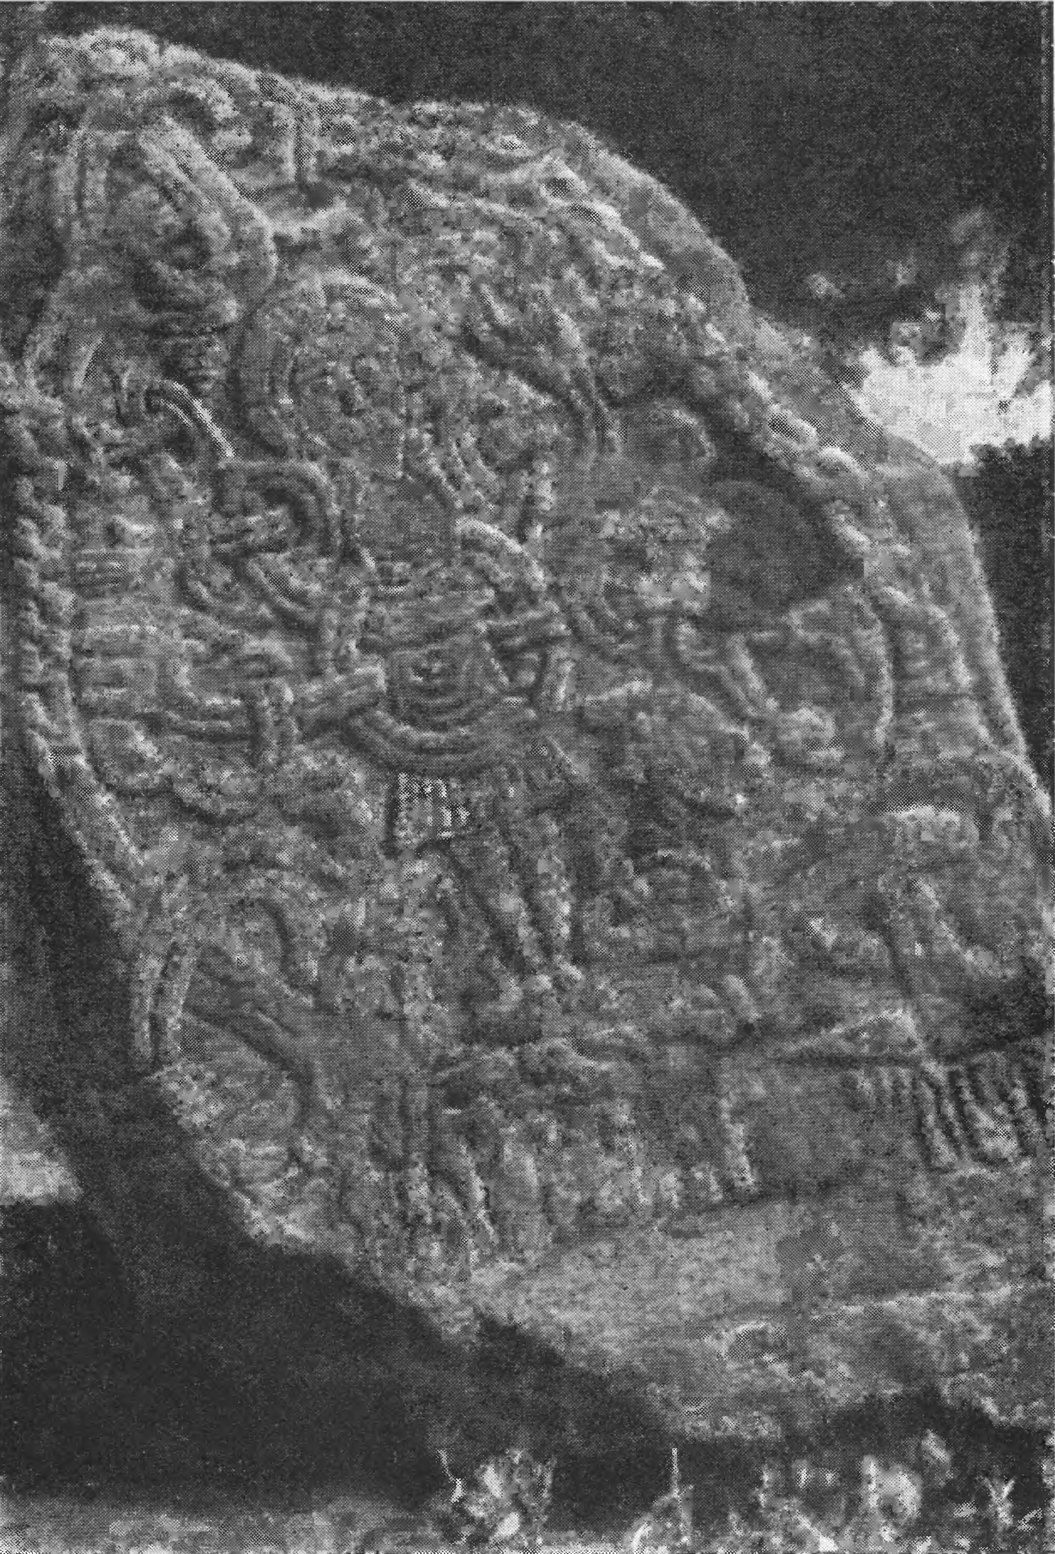 Изображение Христа на «камне Харальда» в Еллинге